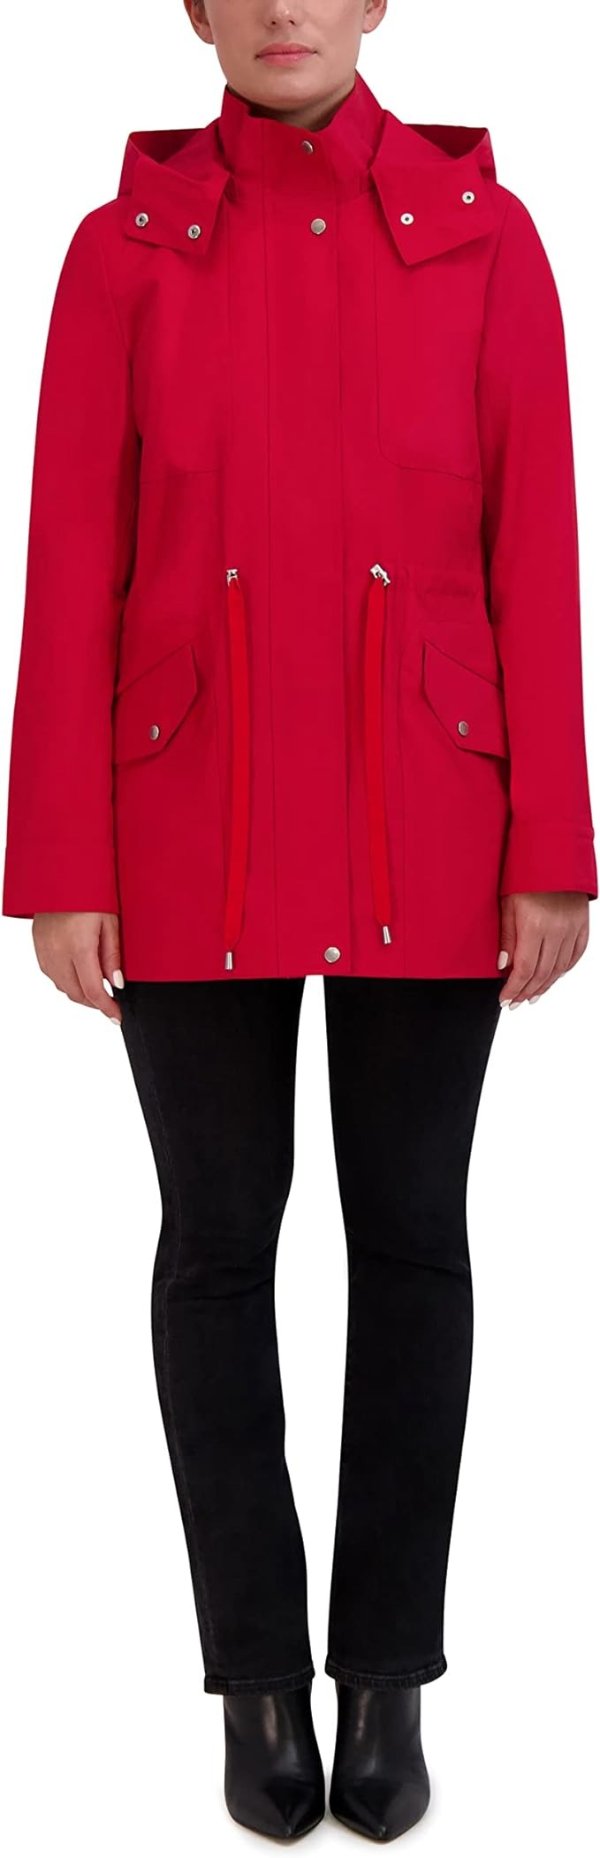 Women's Adjustable Rain Short Coat